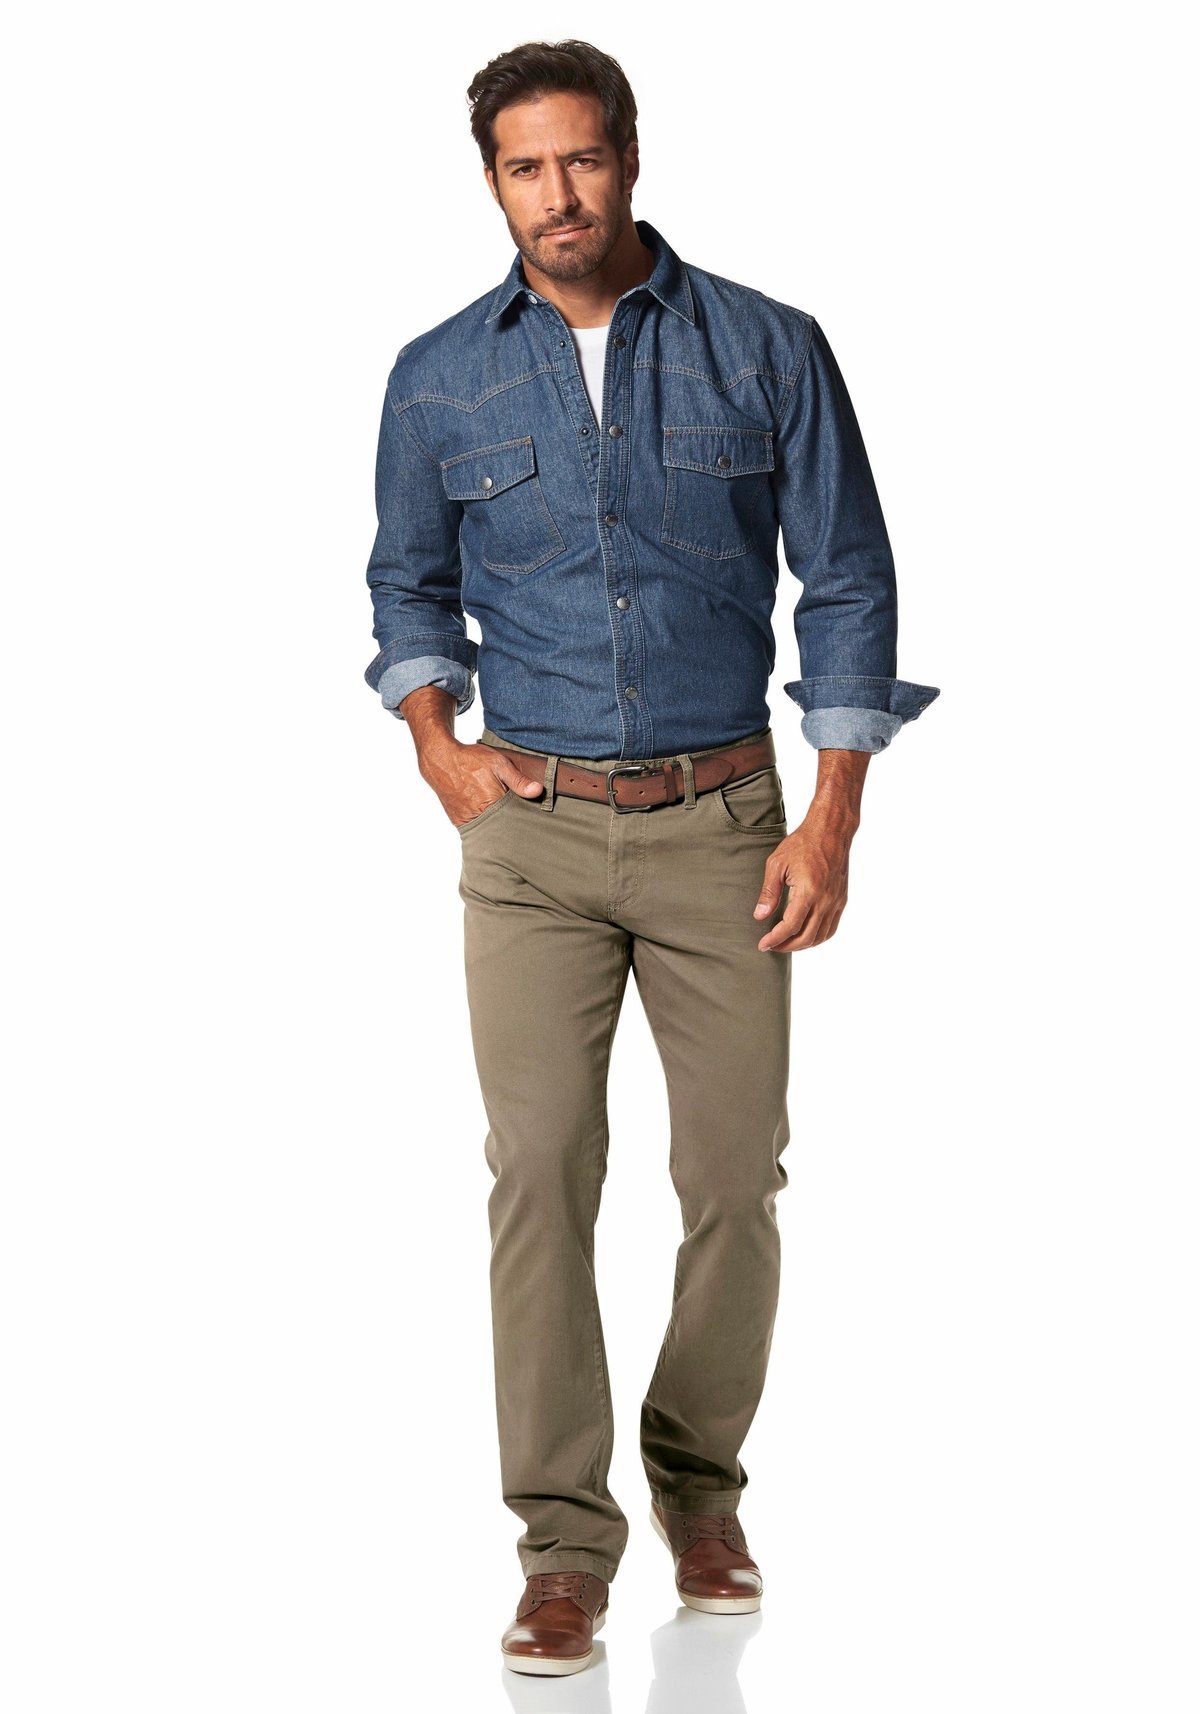 Стиль для мужчины 40. Повседневная одежда для мужчин. Мужская одежда джинсы и рубашки. Повседневная одежда для мужчин 50 лет. Мужчина в джинсах и рубашке.